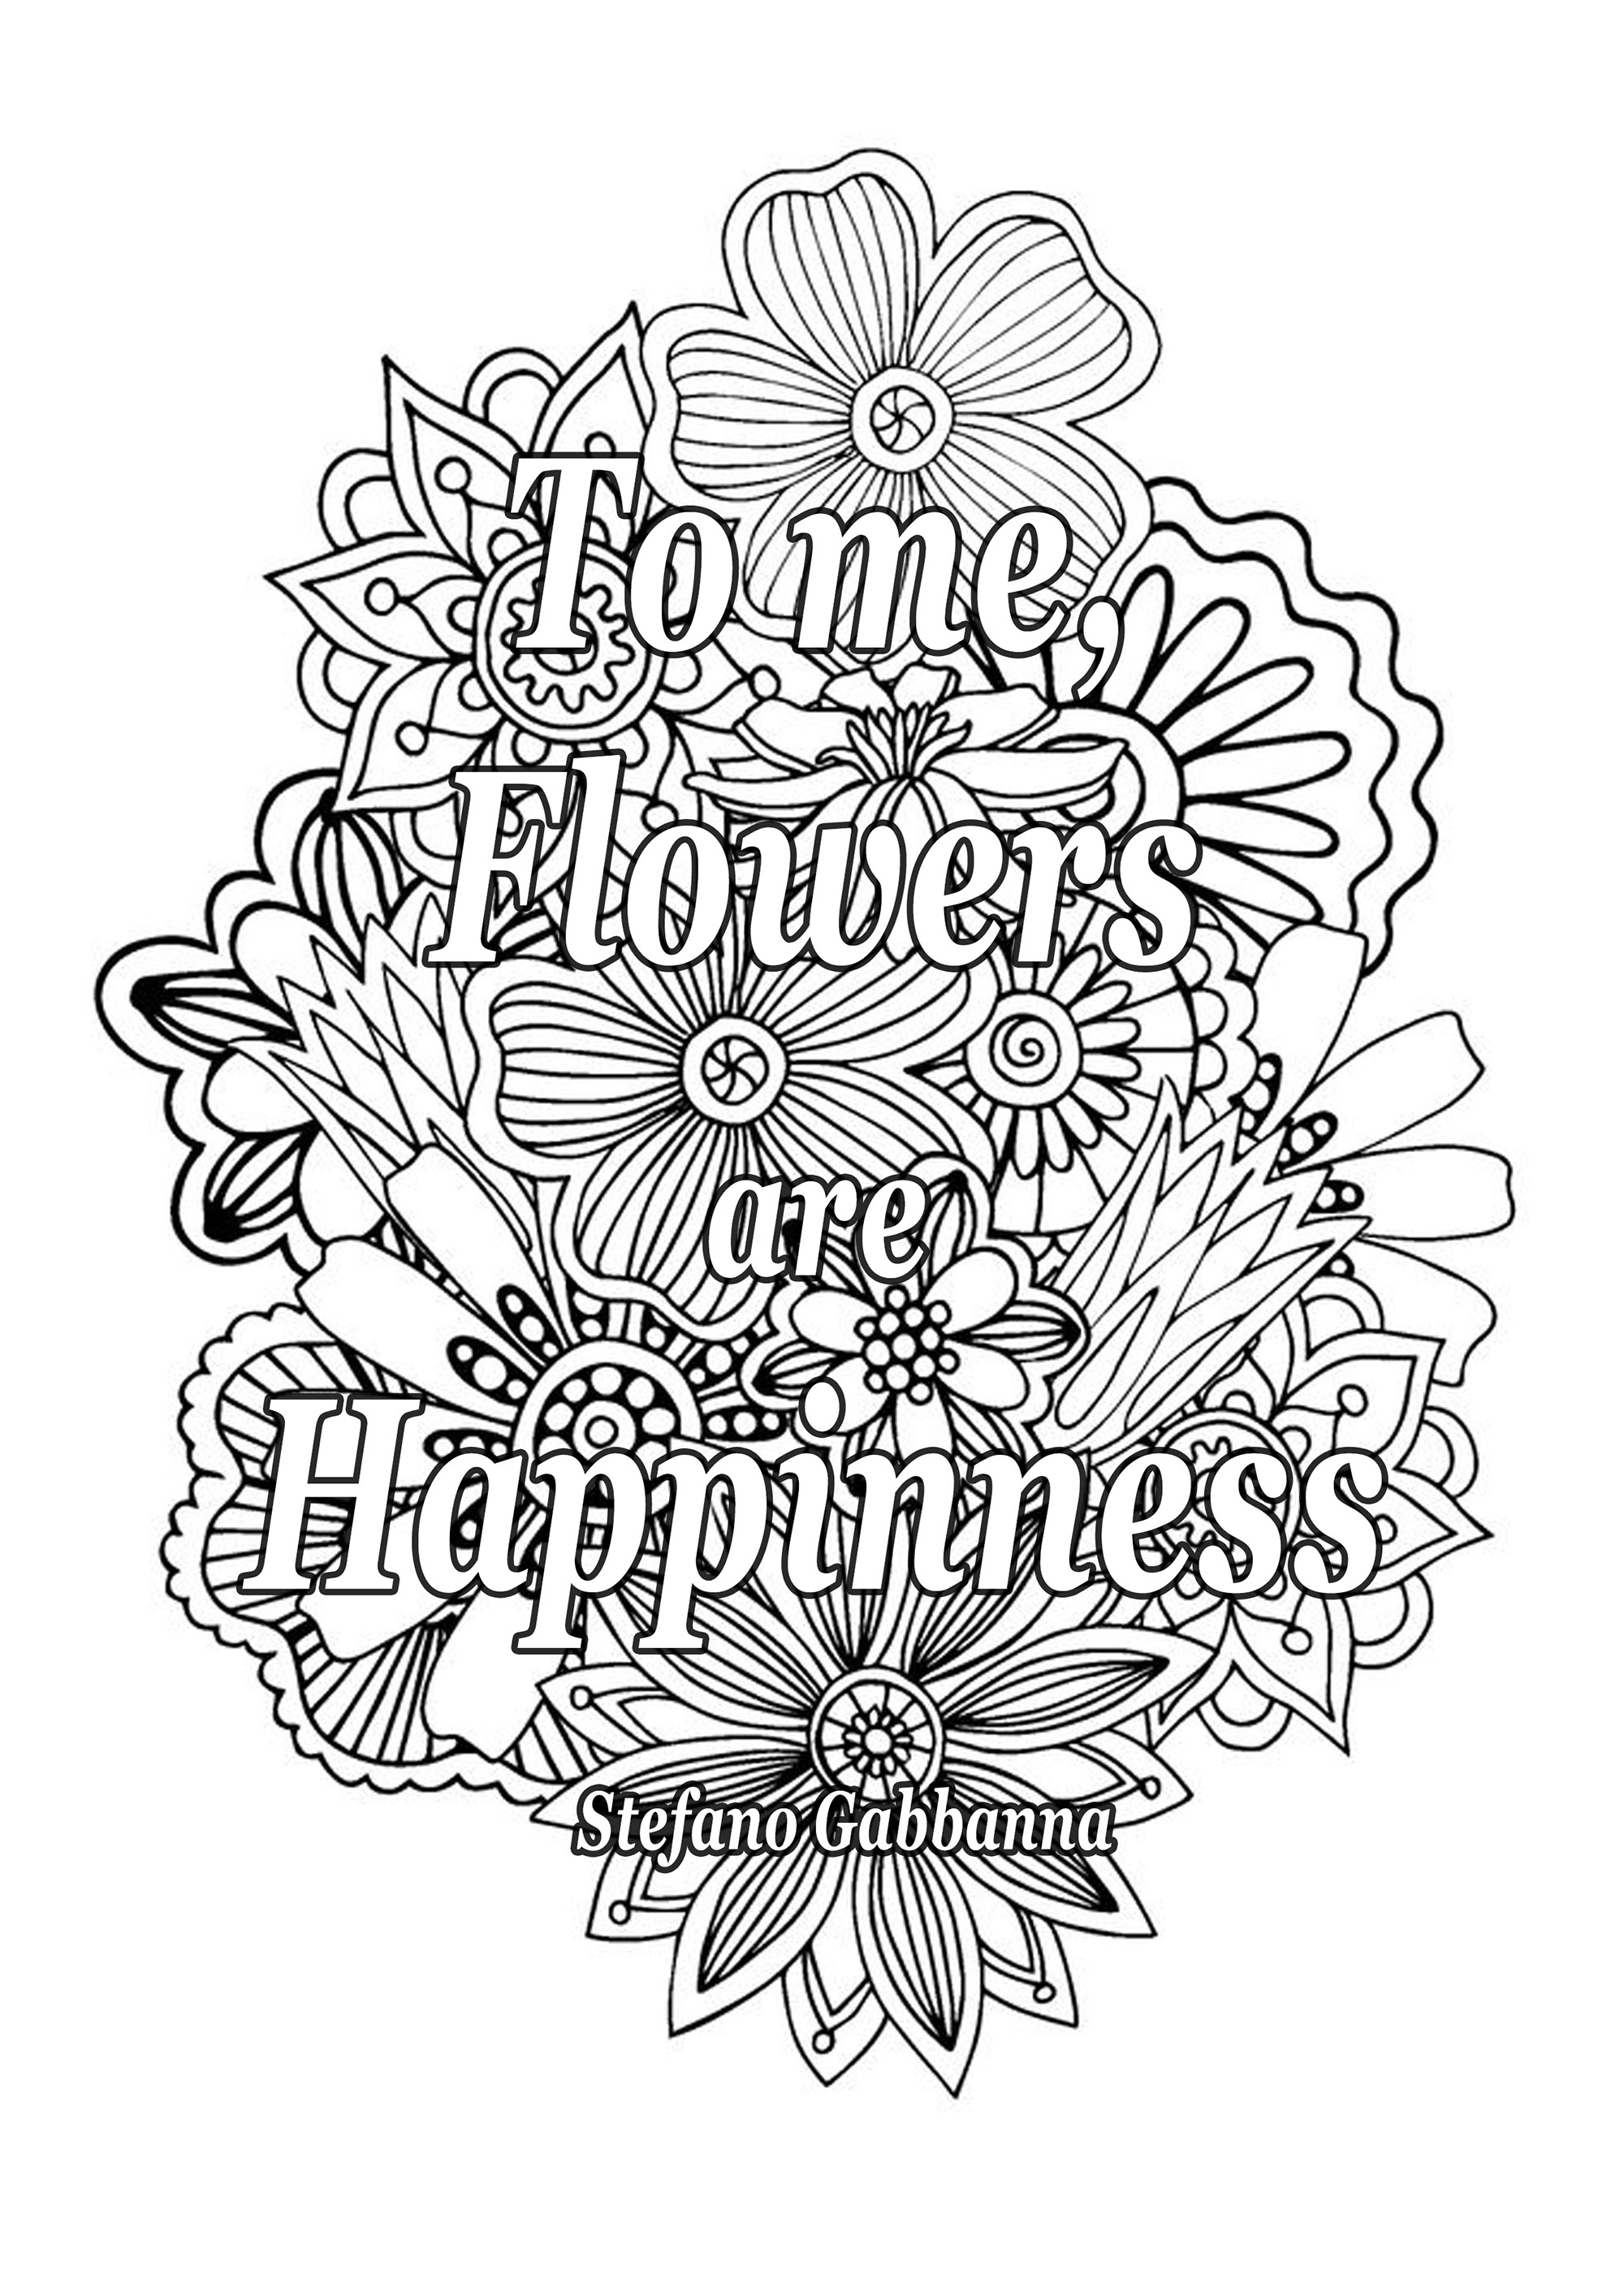 Para mí, las flores son la felicidad. Cita de Stefano Gabbanna